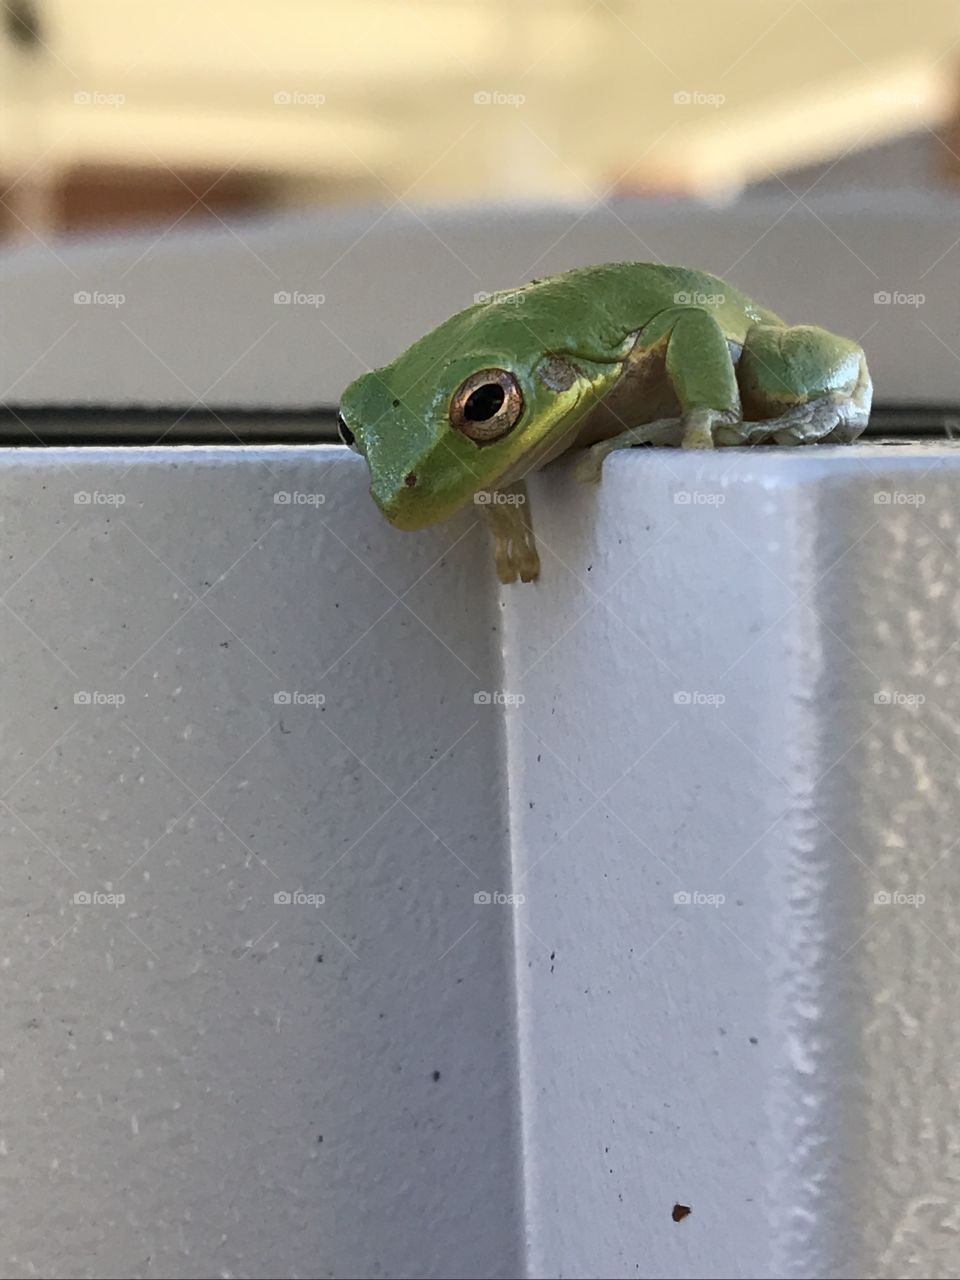 Hi frog